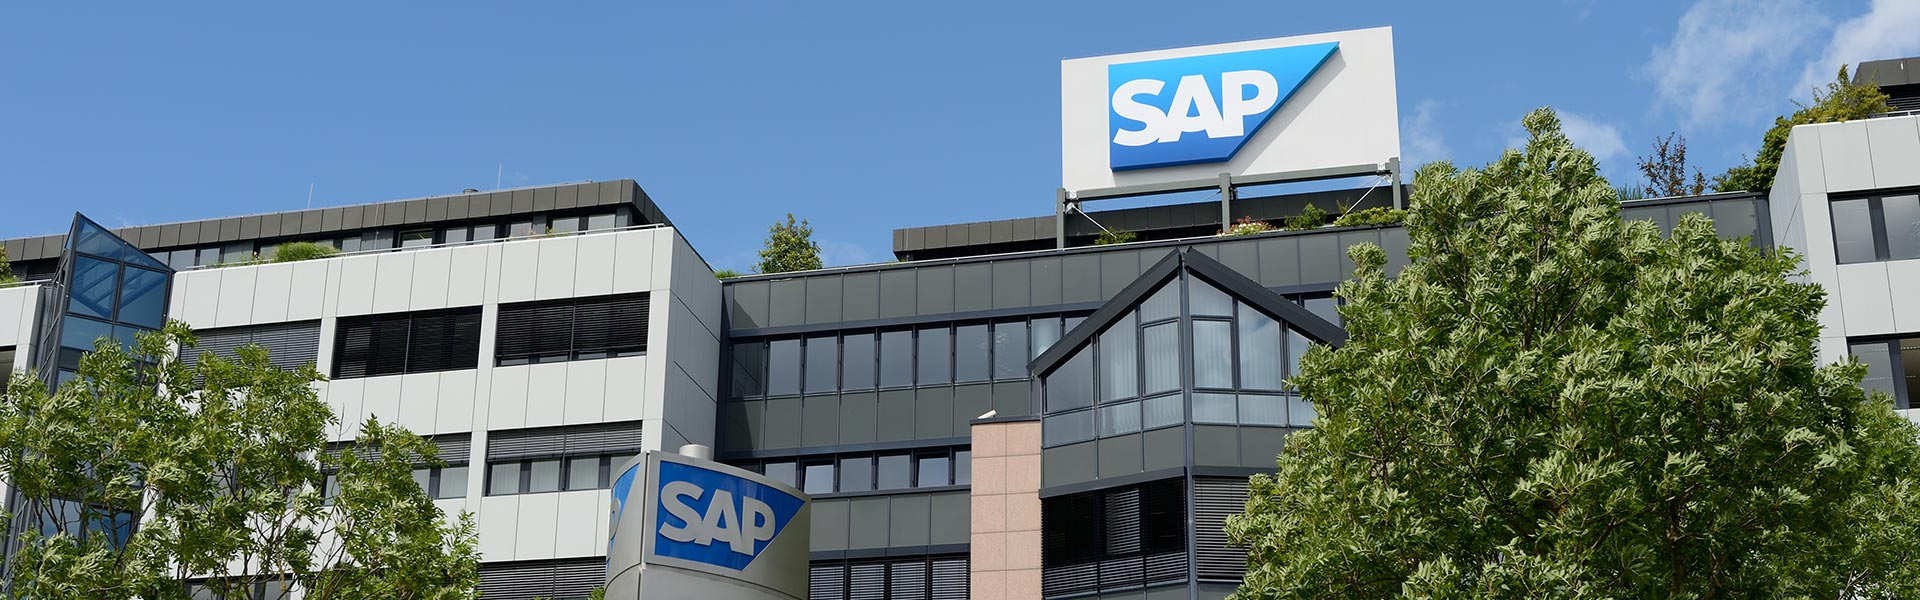 SAP e Intel destacan las ventajas de transformarse en empresas inteligentes, conectadas y sostenibles